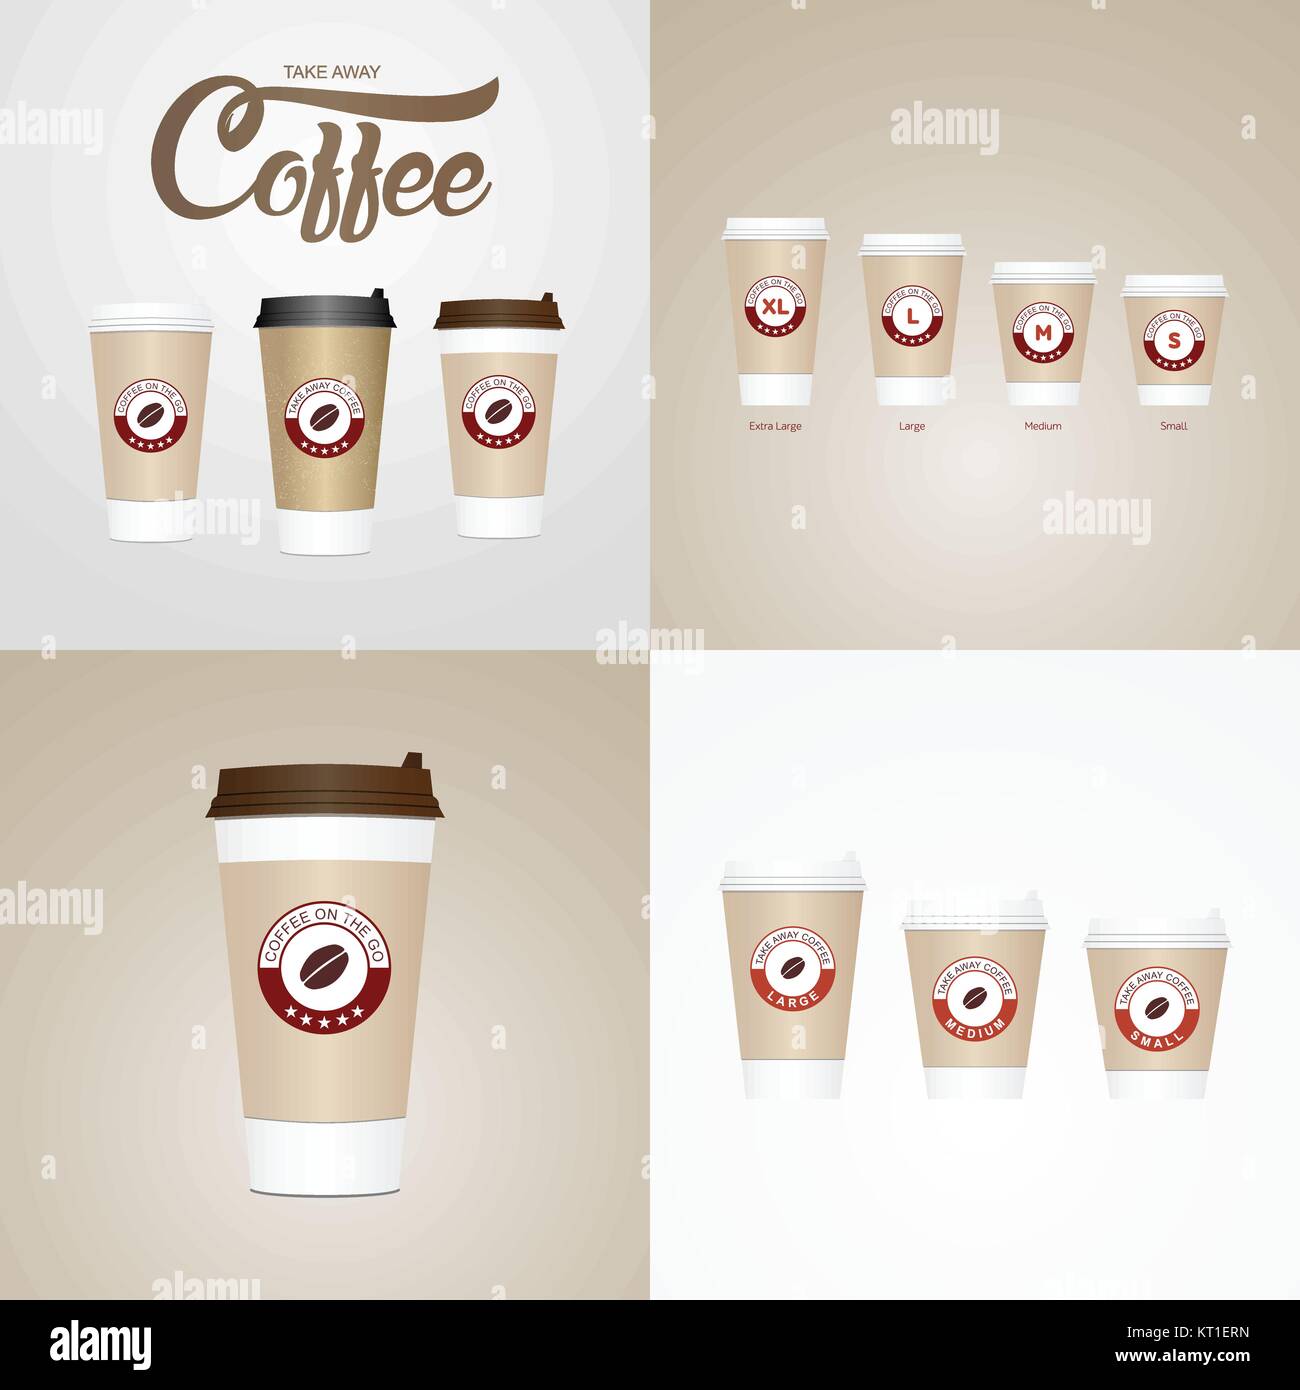 Take away latte -Fotos und -Bildmaterial in hoher Auflösung – Alamy